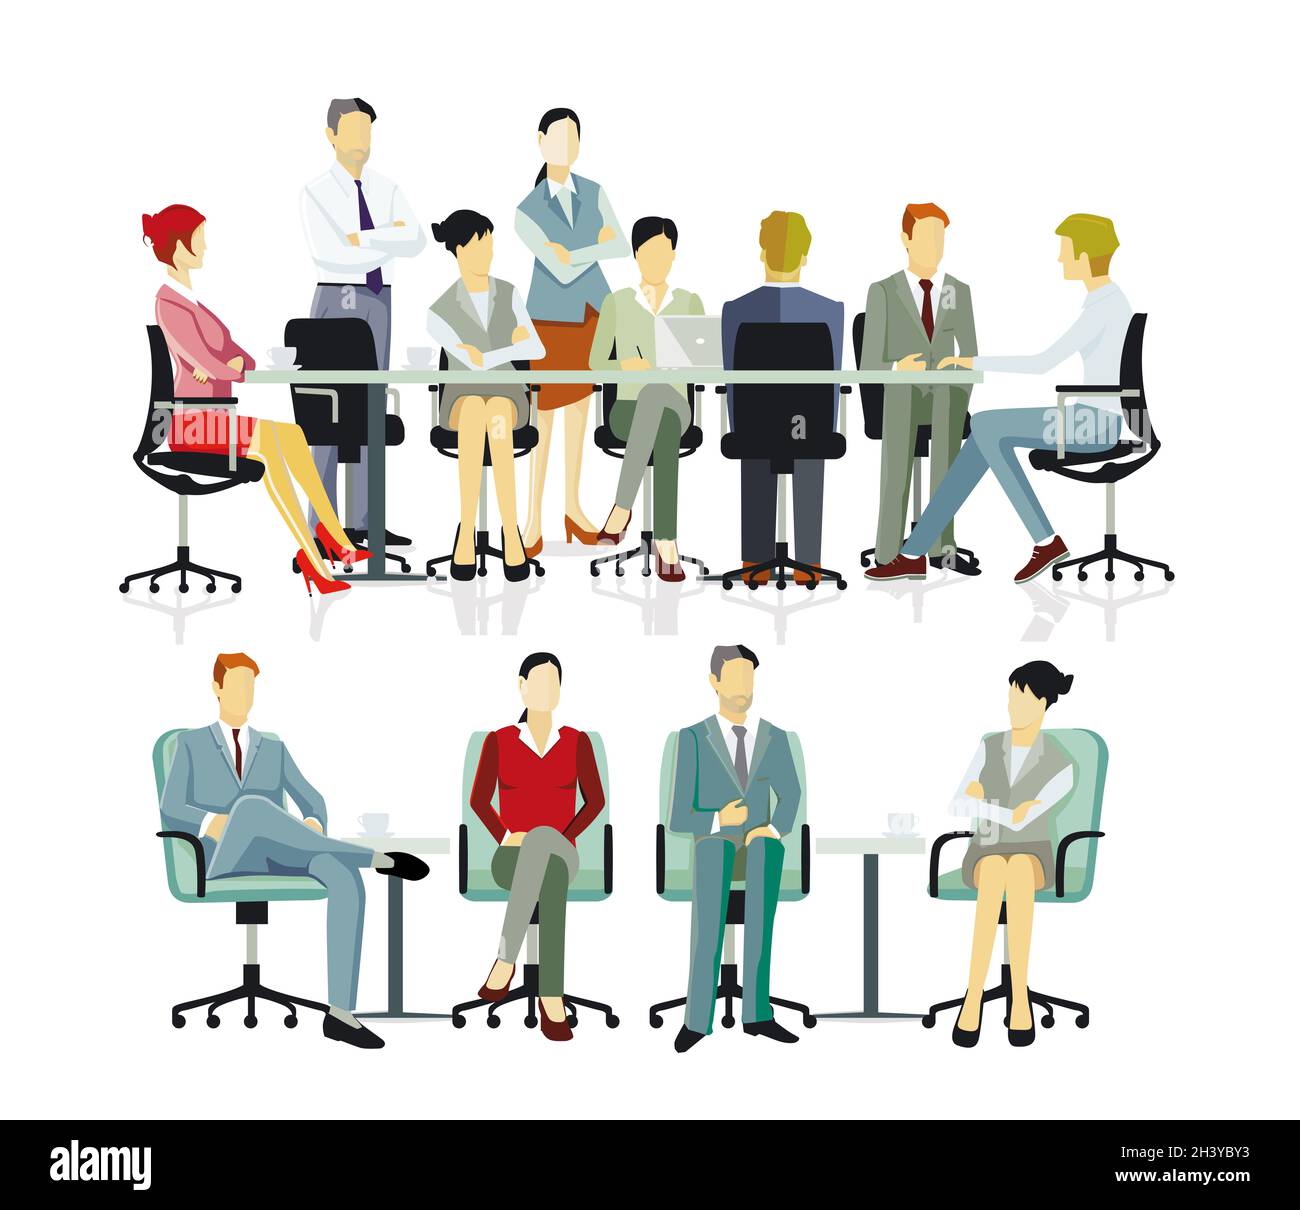 Reunión de equipo, ilustración de asesoramiento empresarial Foto de stock